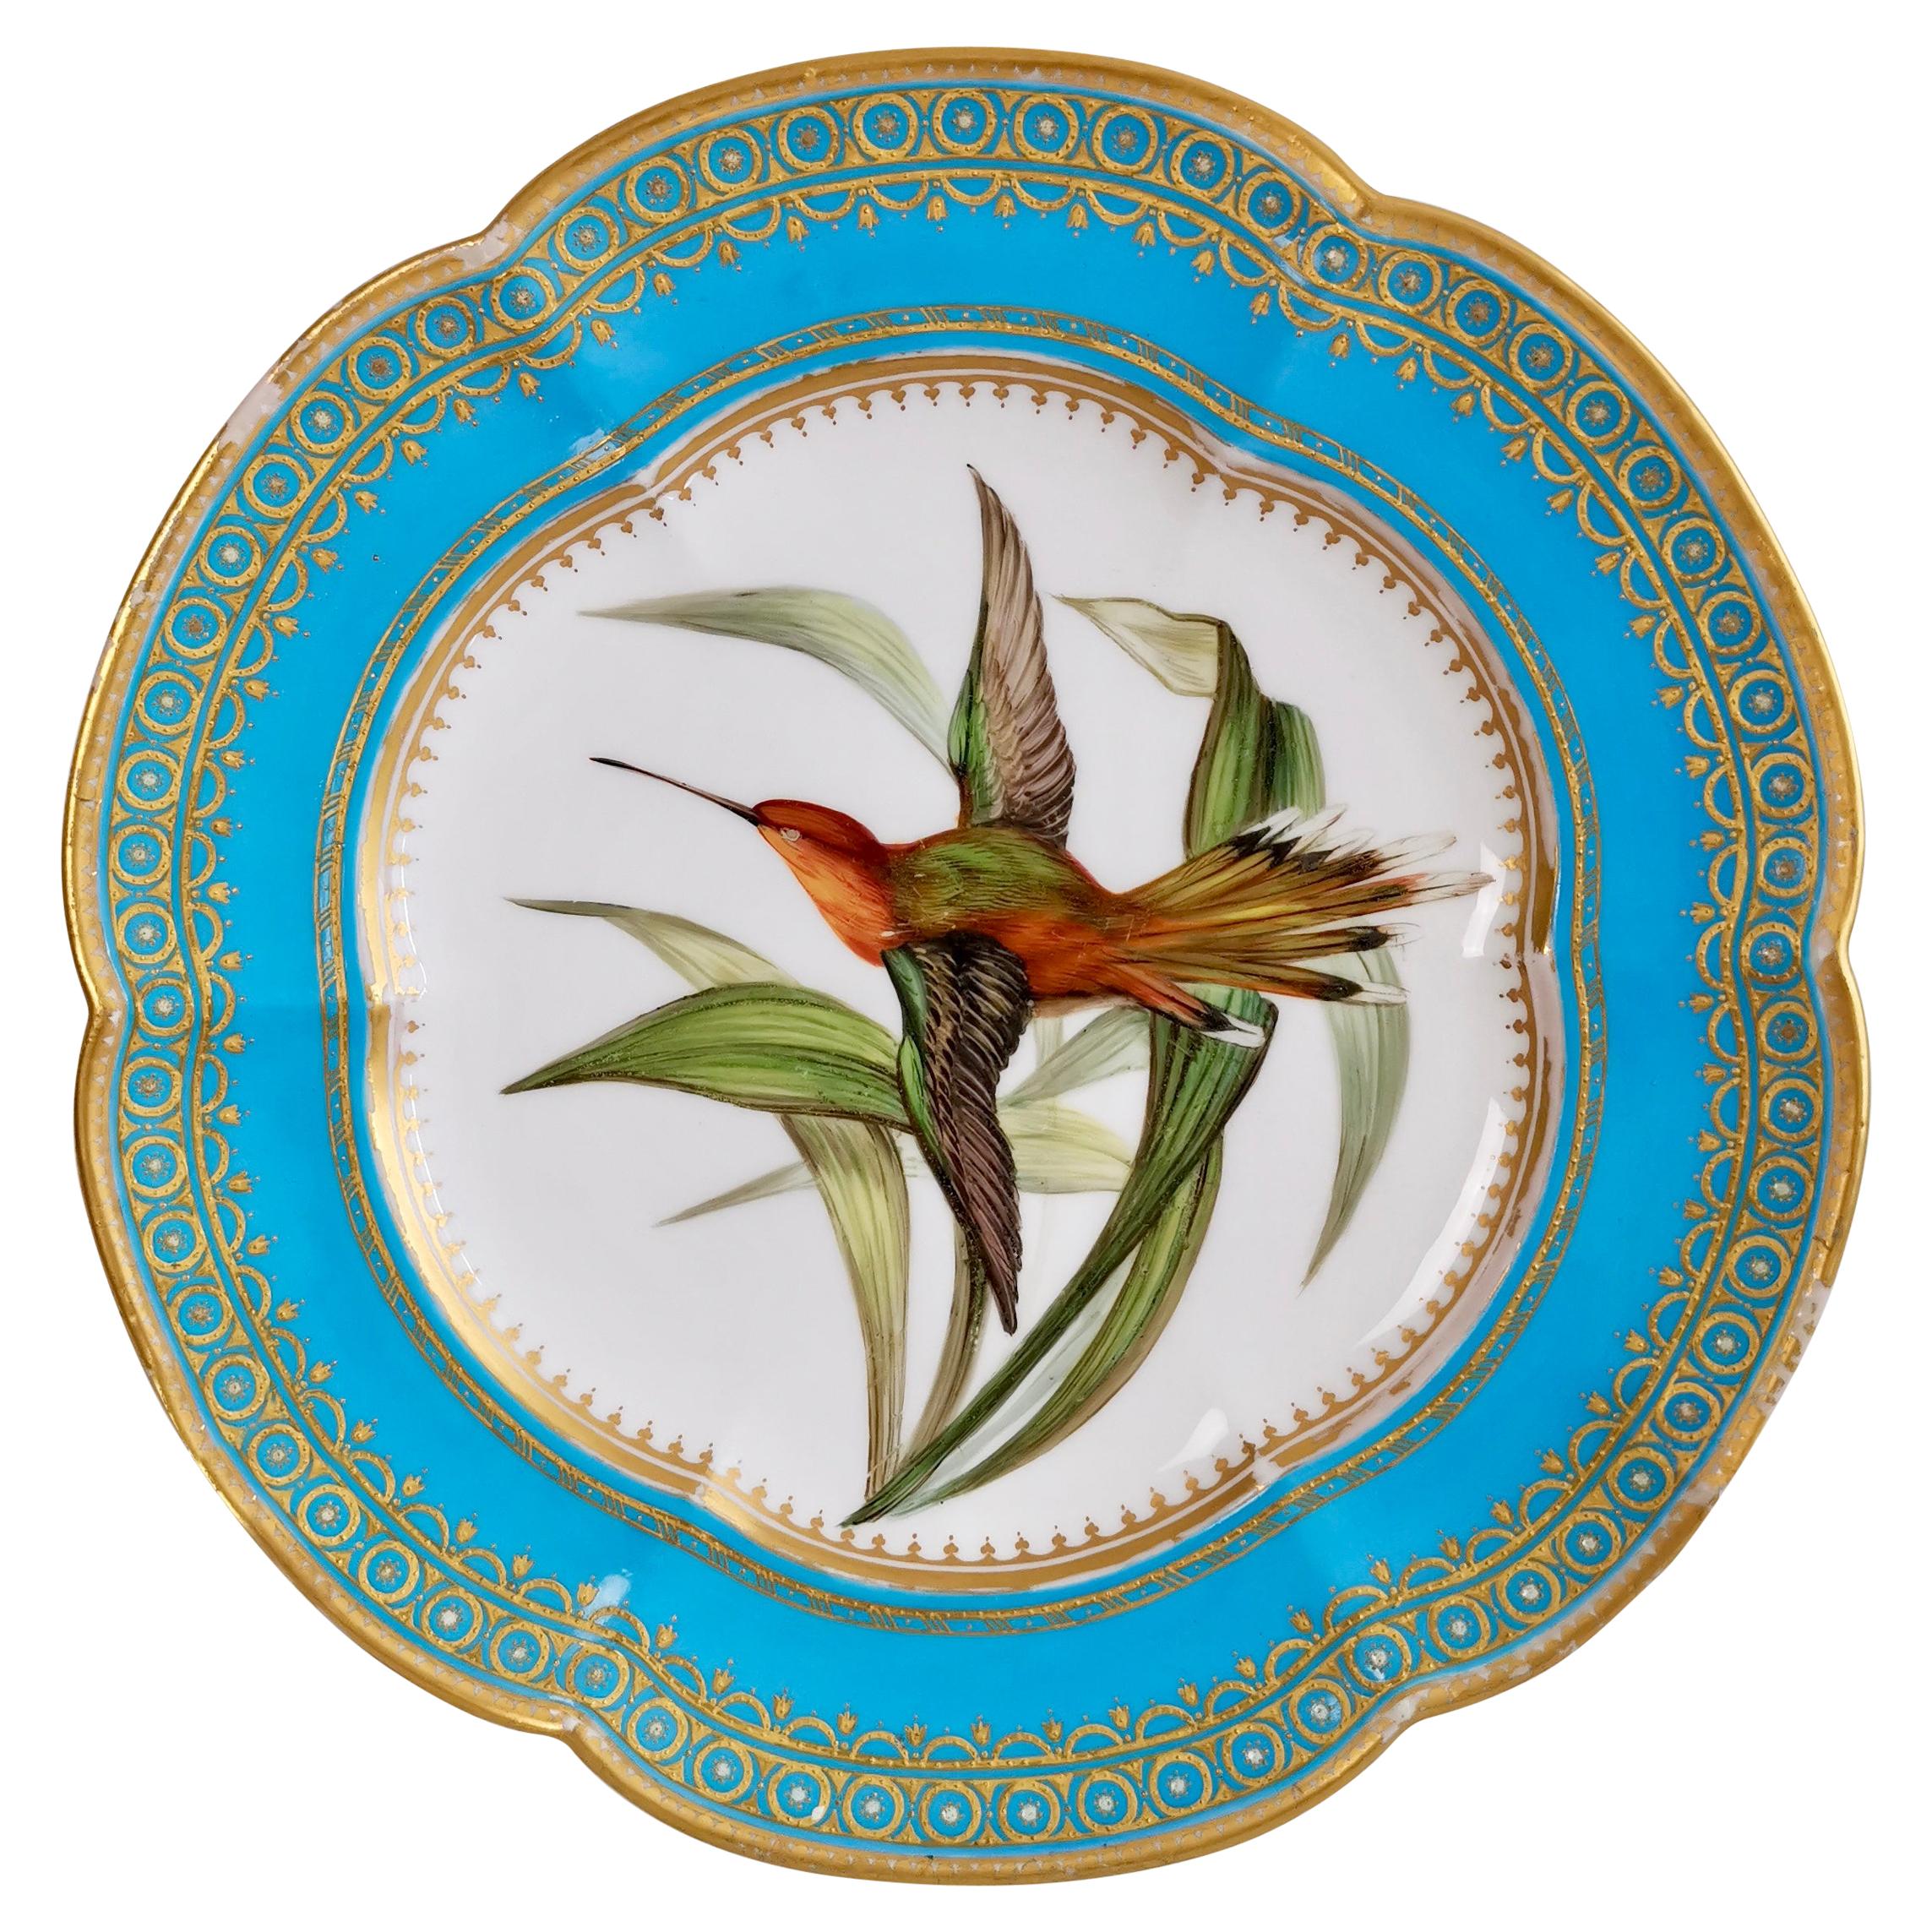 Coalport Dessert Plate, Humming Bird by John Randall, circa 1870